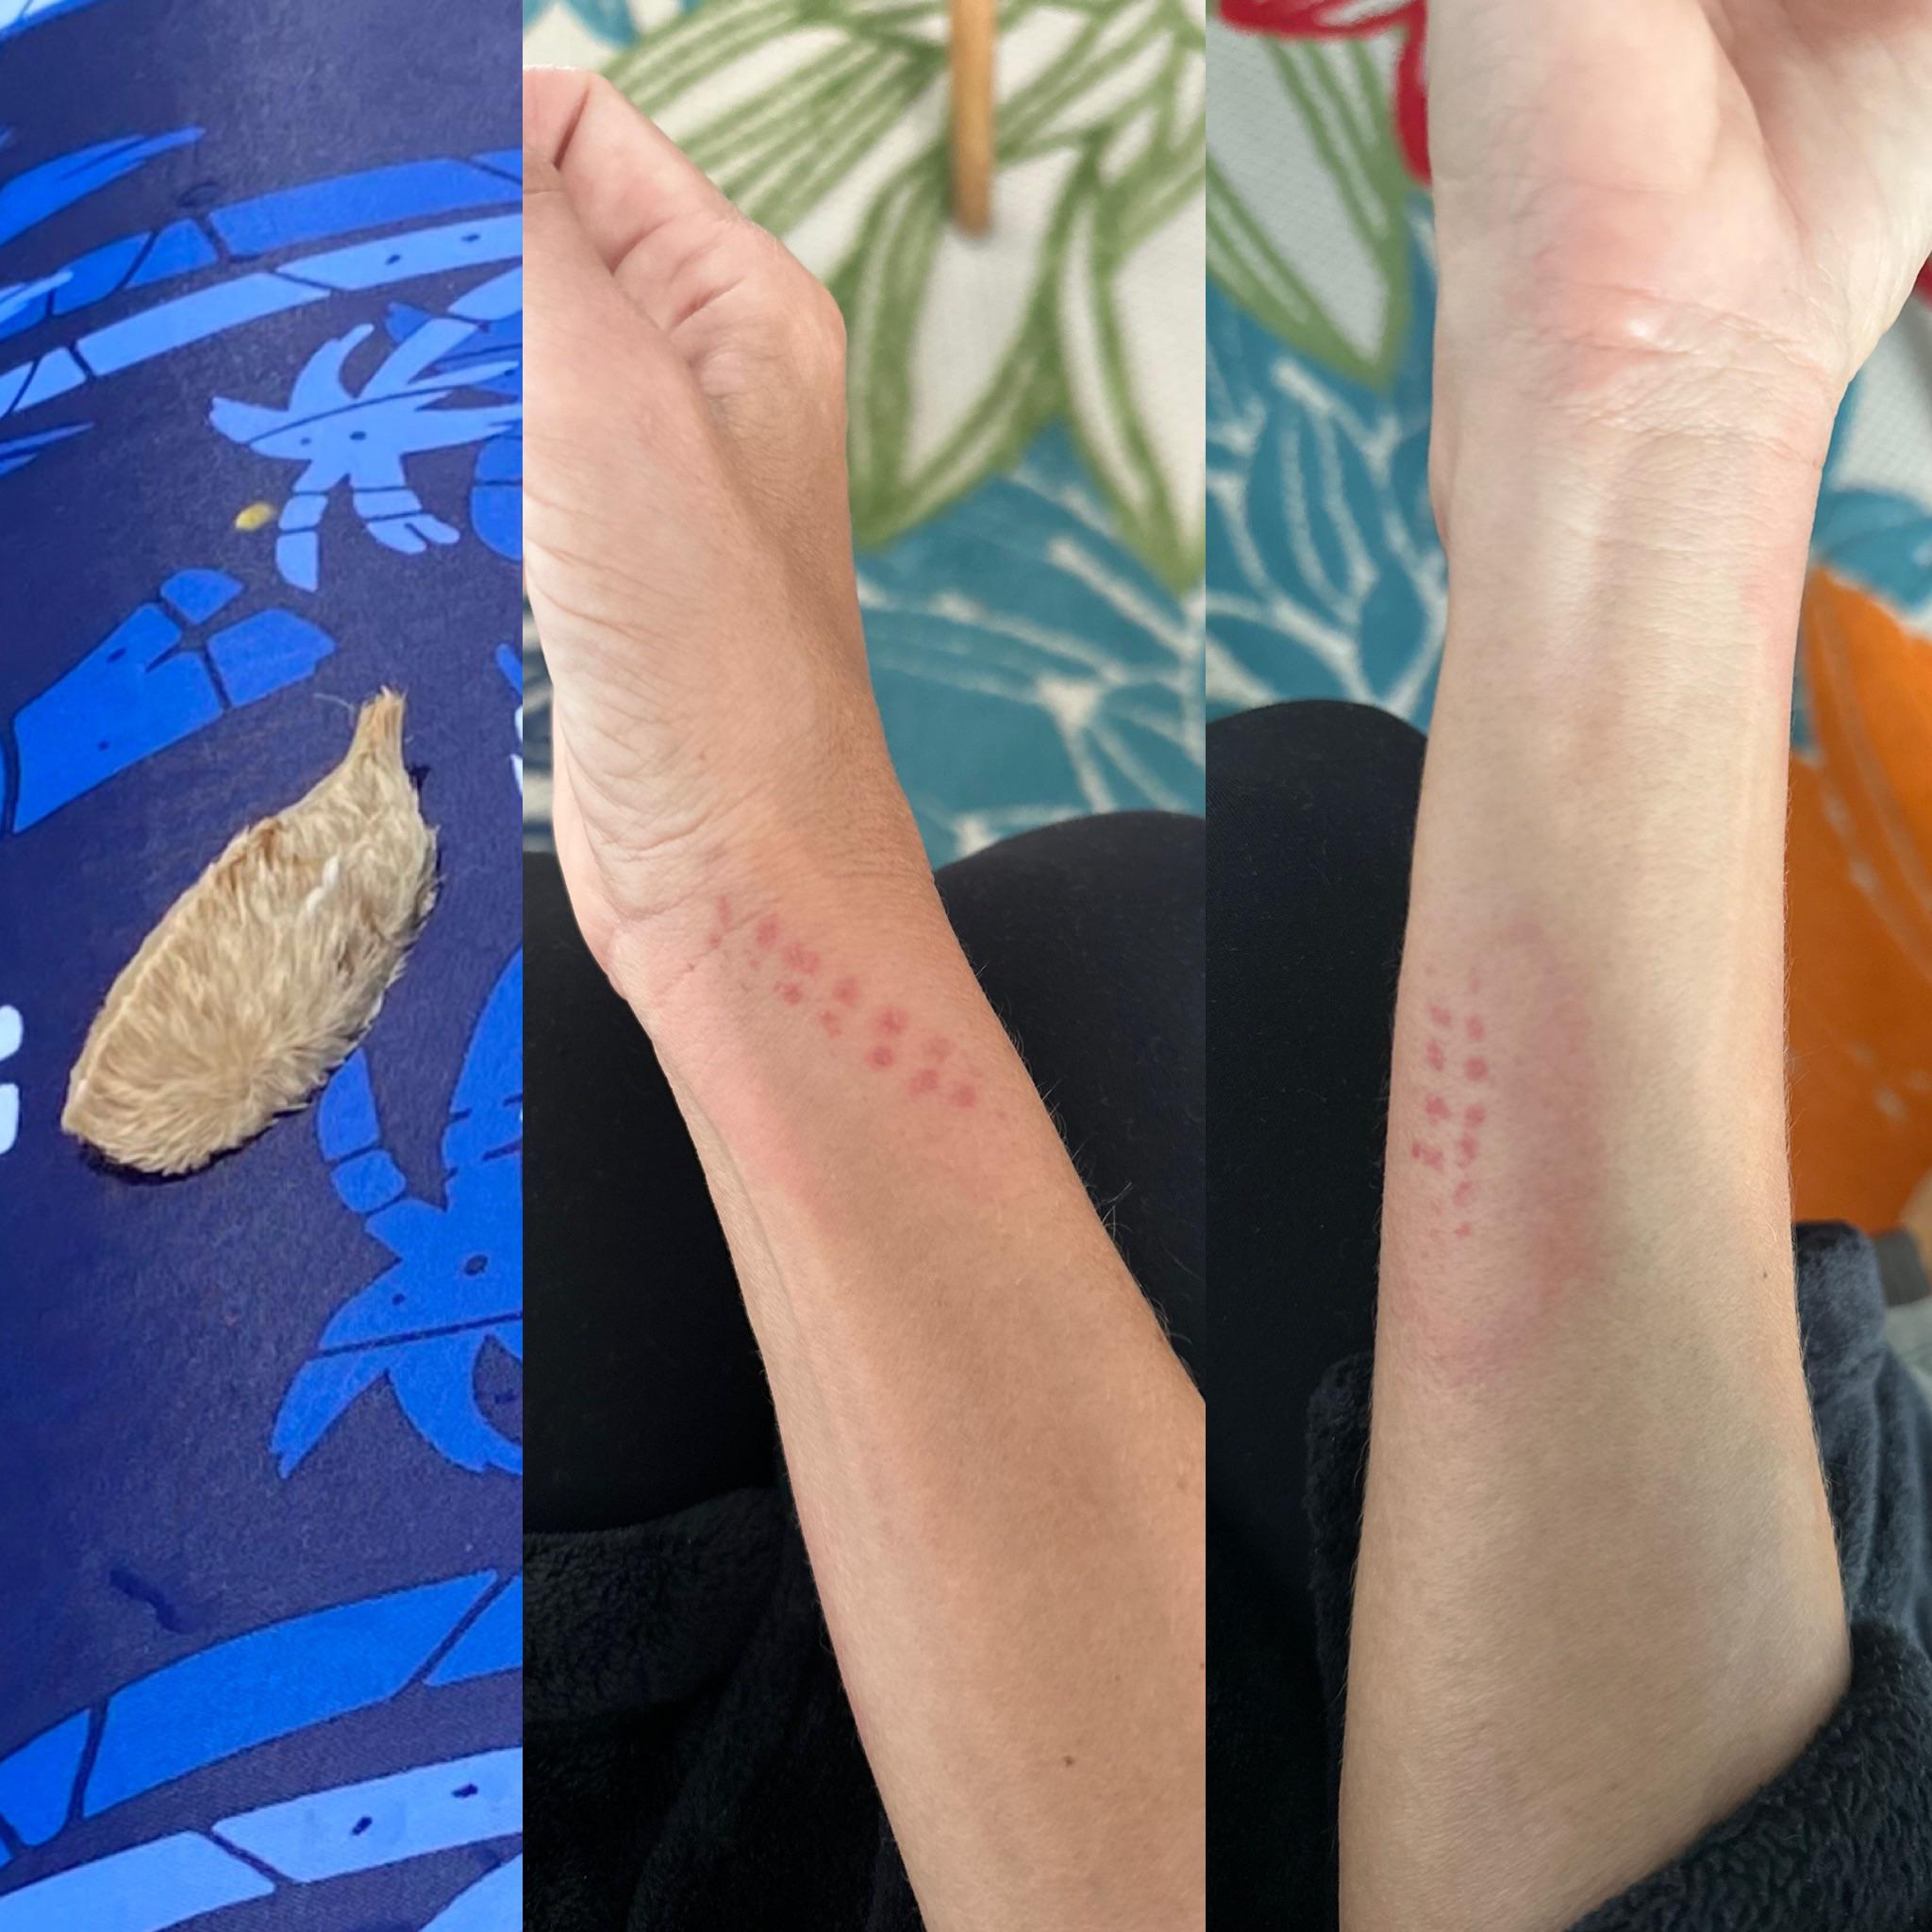 Puss Caterpillar marks